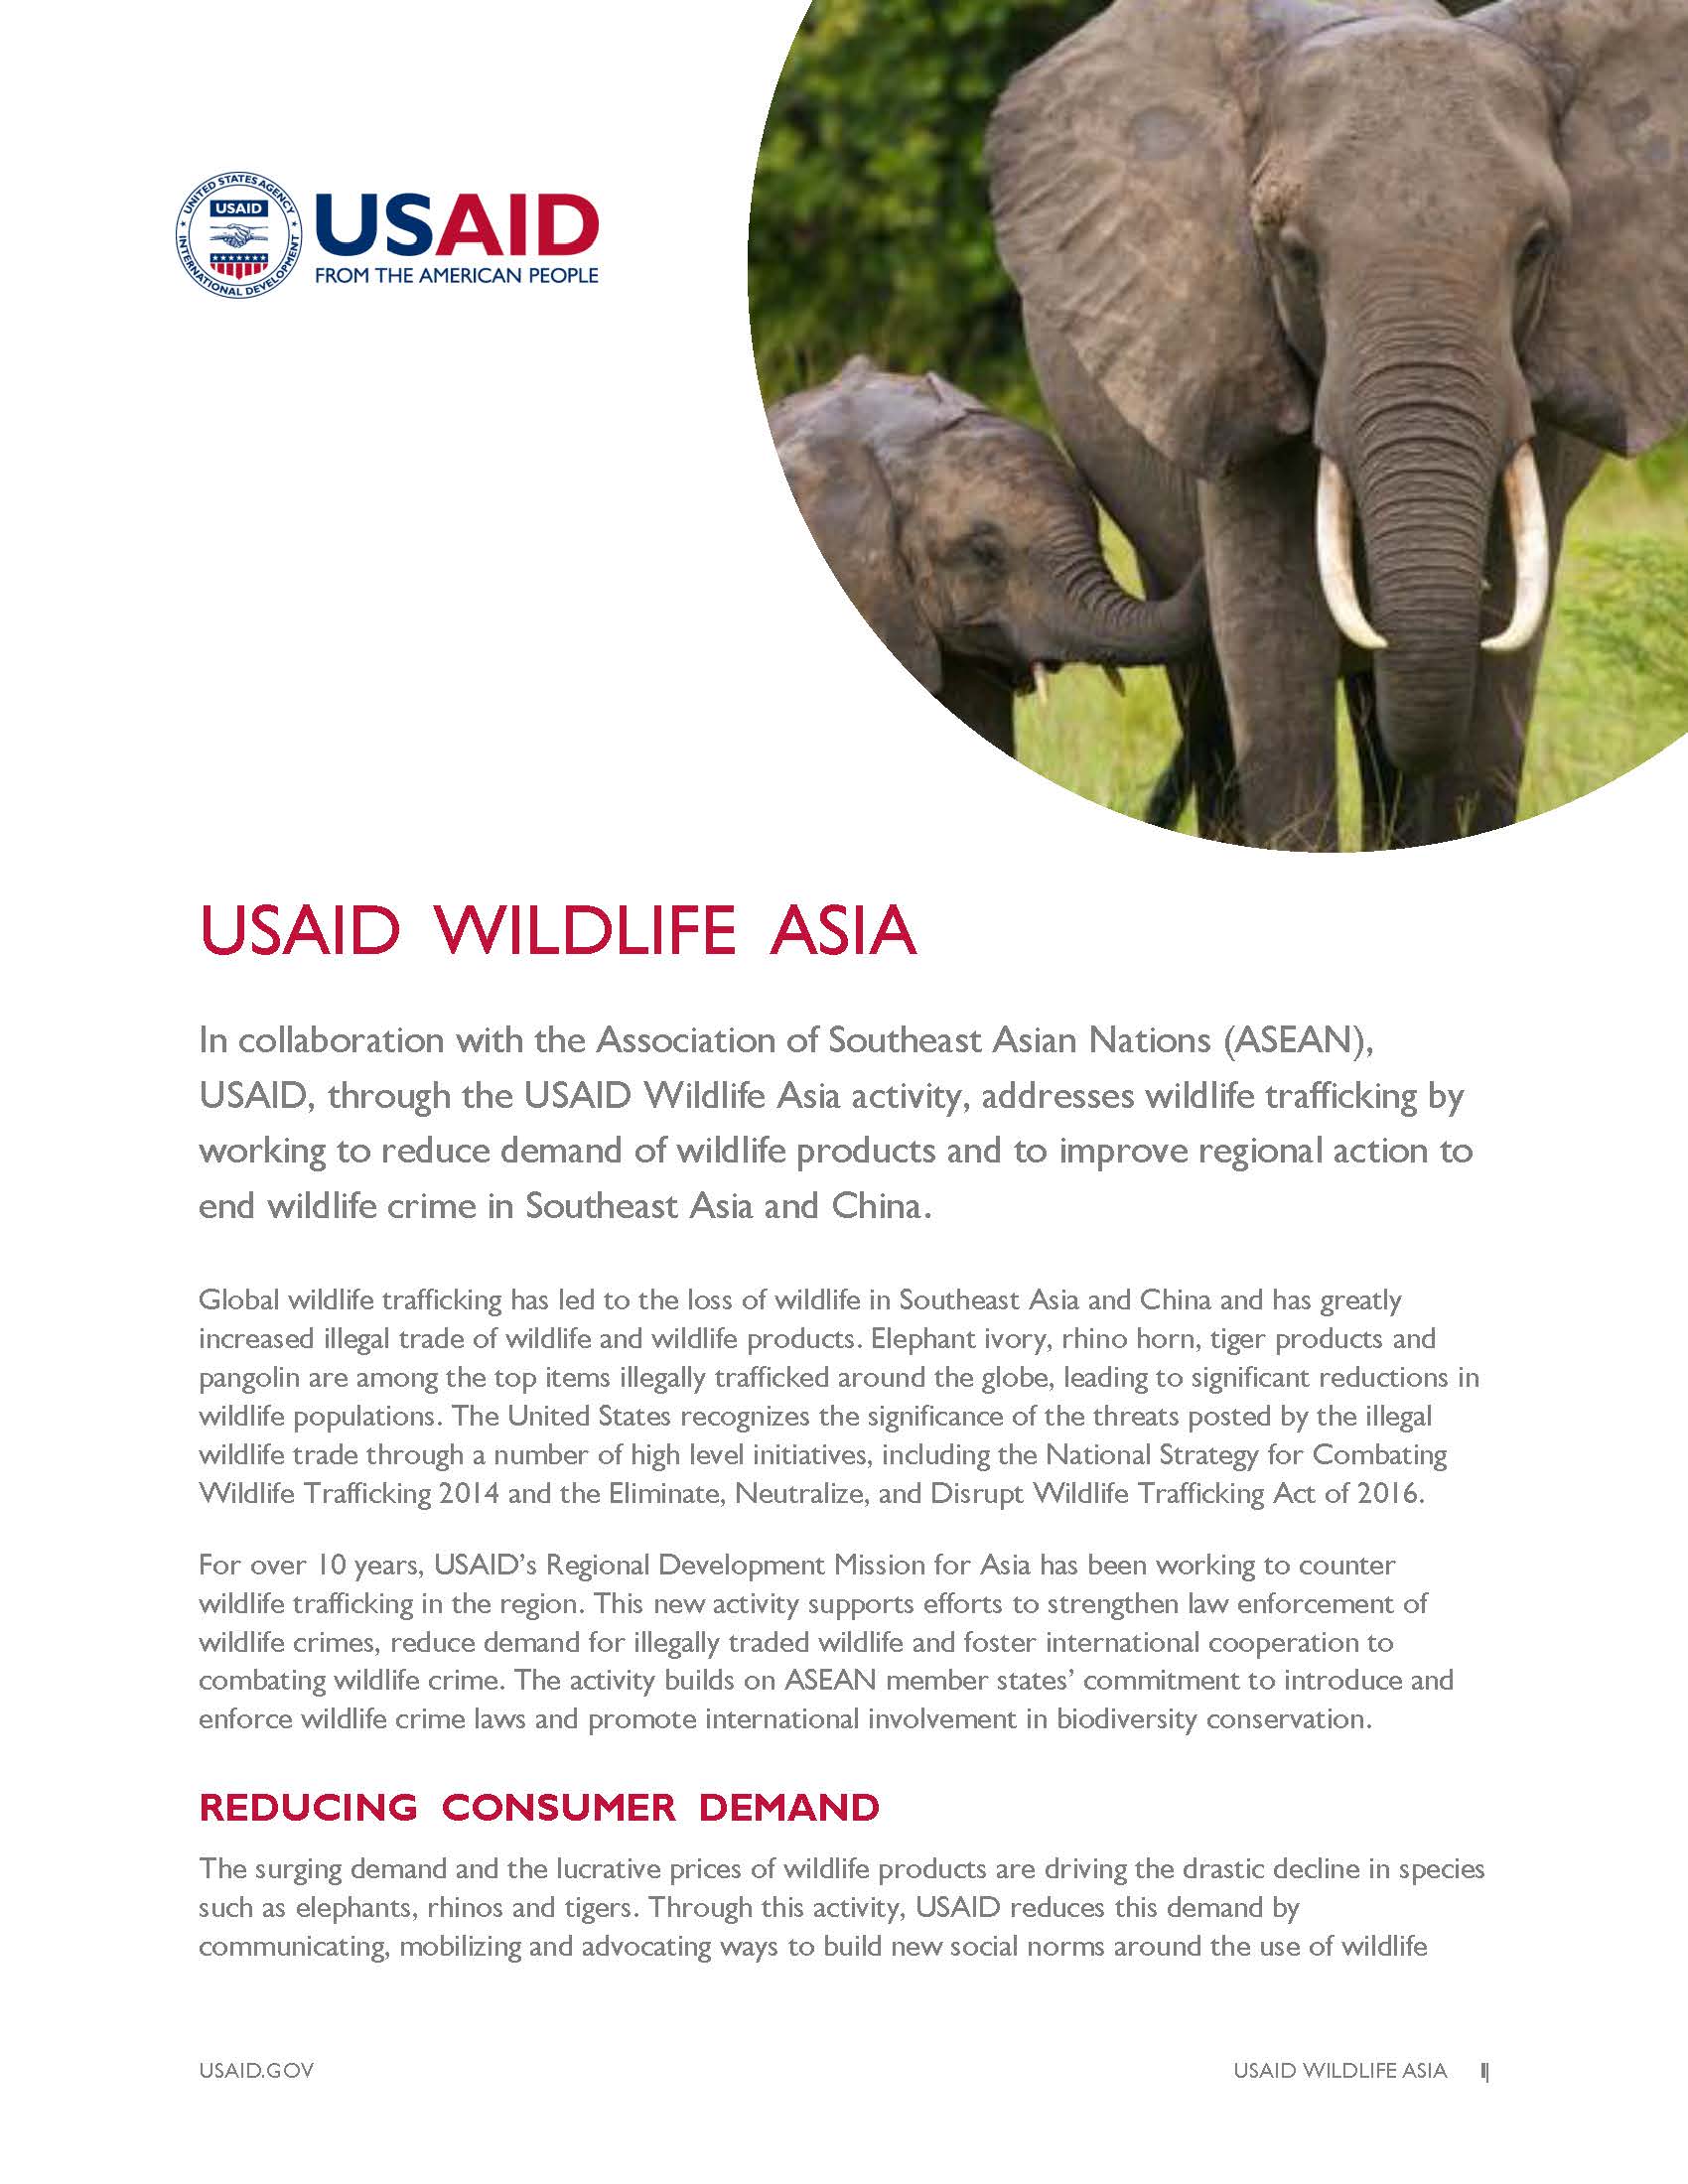 USAID Wildlife Asia